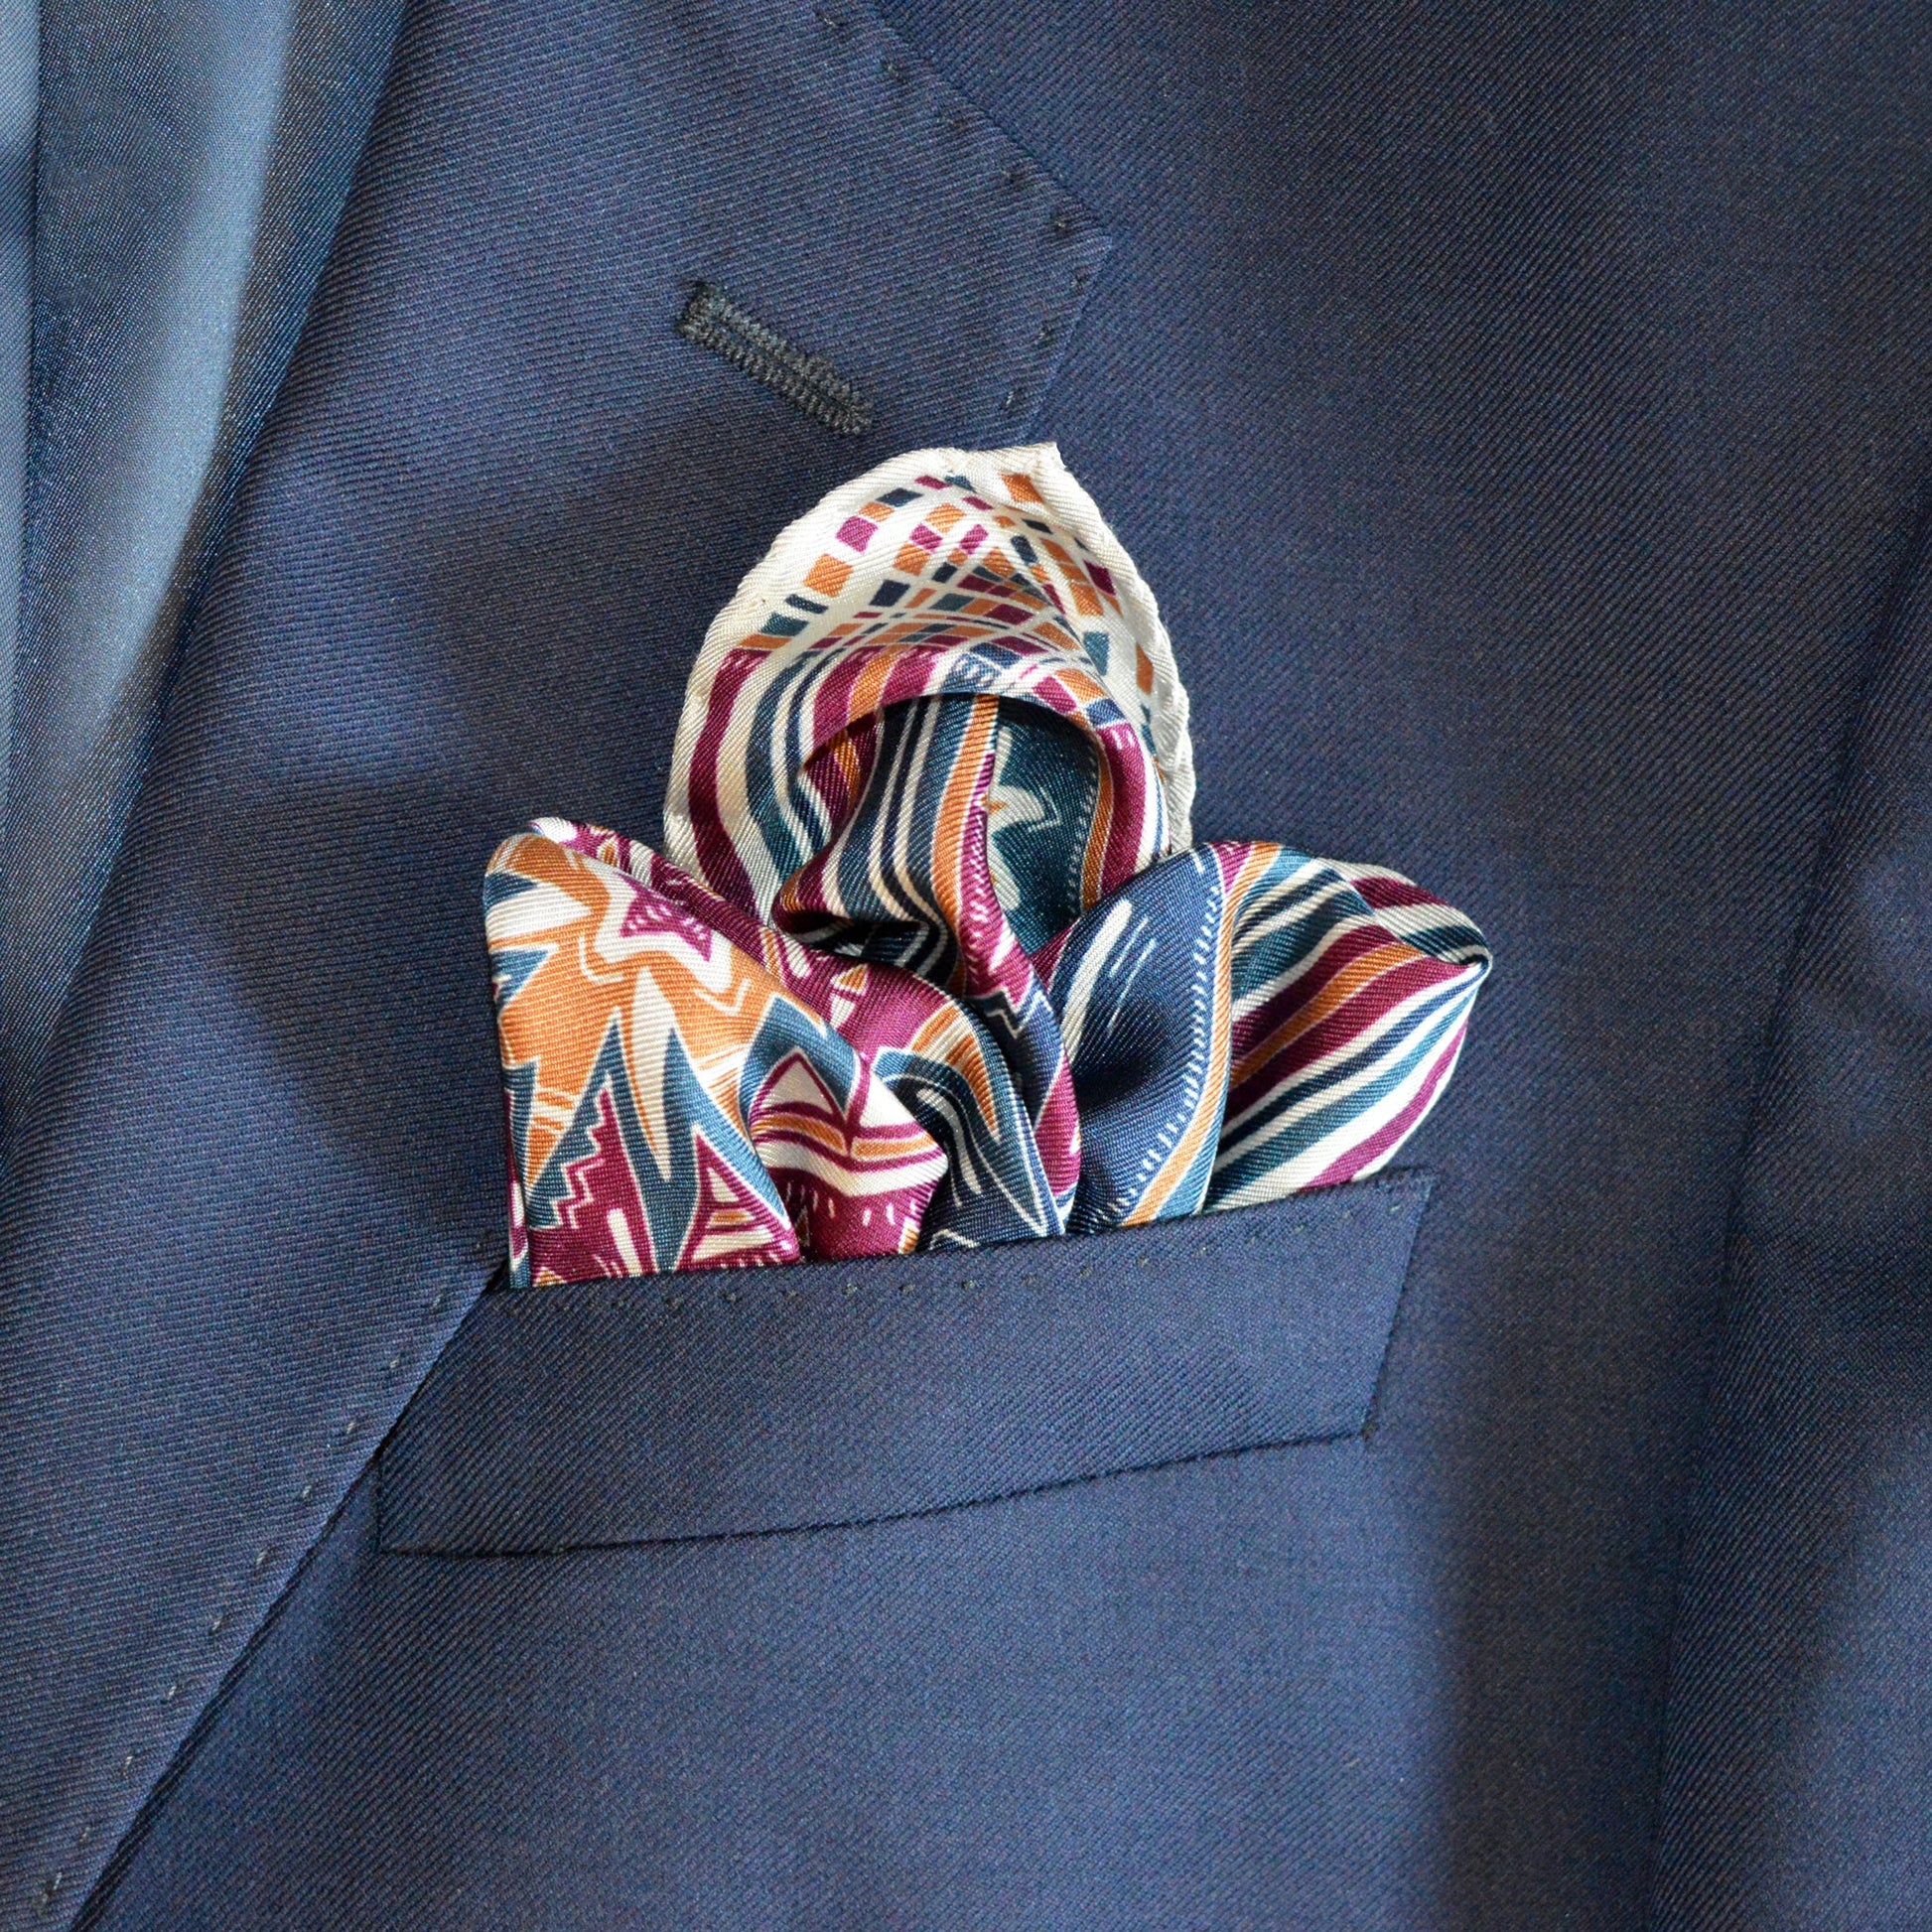 fazzoletto da taschino inserito nella giacca elegante dal design italiano pura seta naturale con motivi ricchi